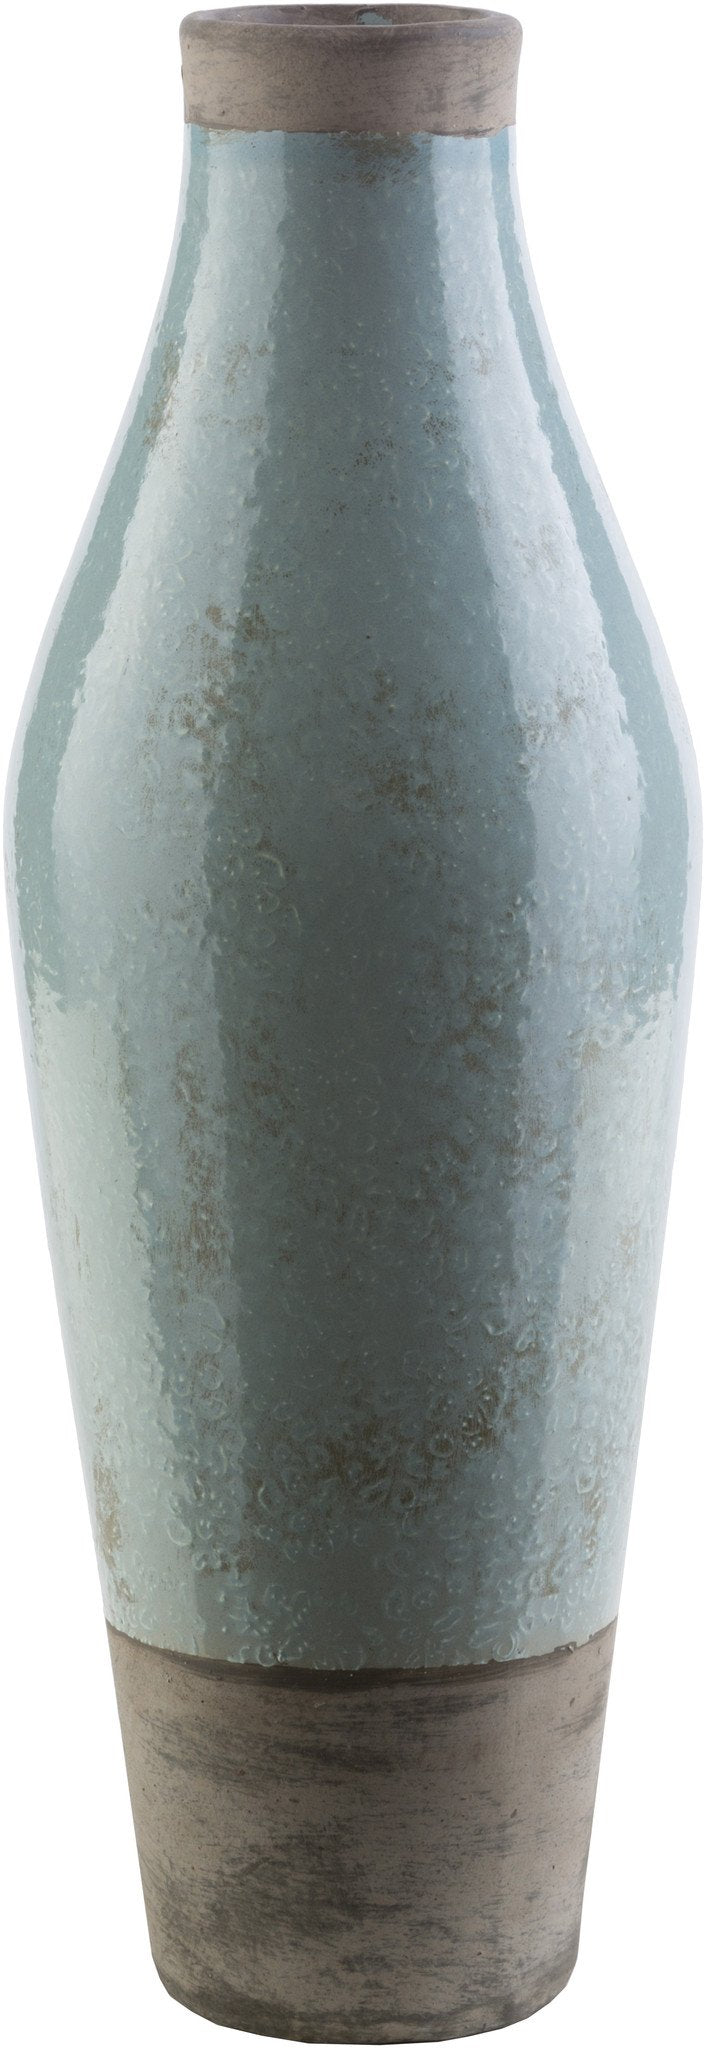 Medium Leclair Vase